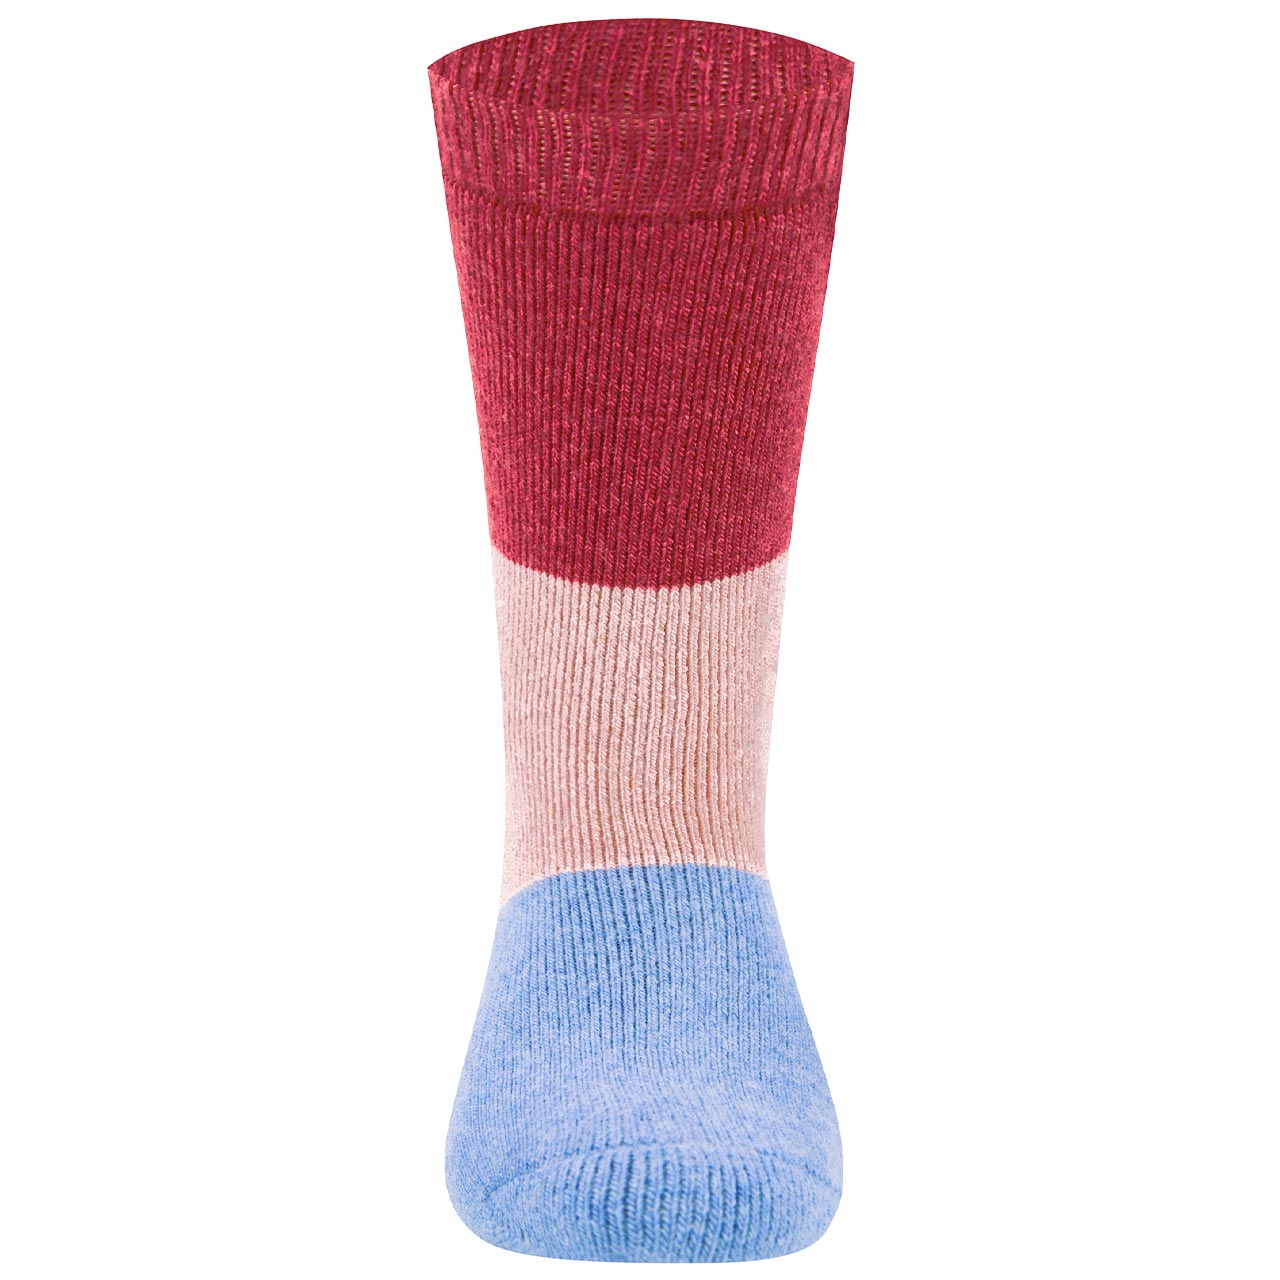 Warme Gummistiefel Socken Schurwolle pink